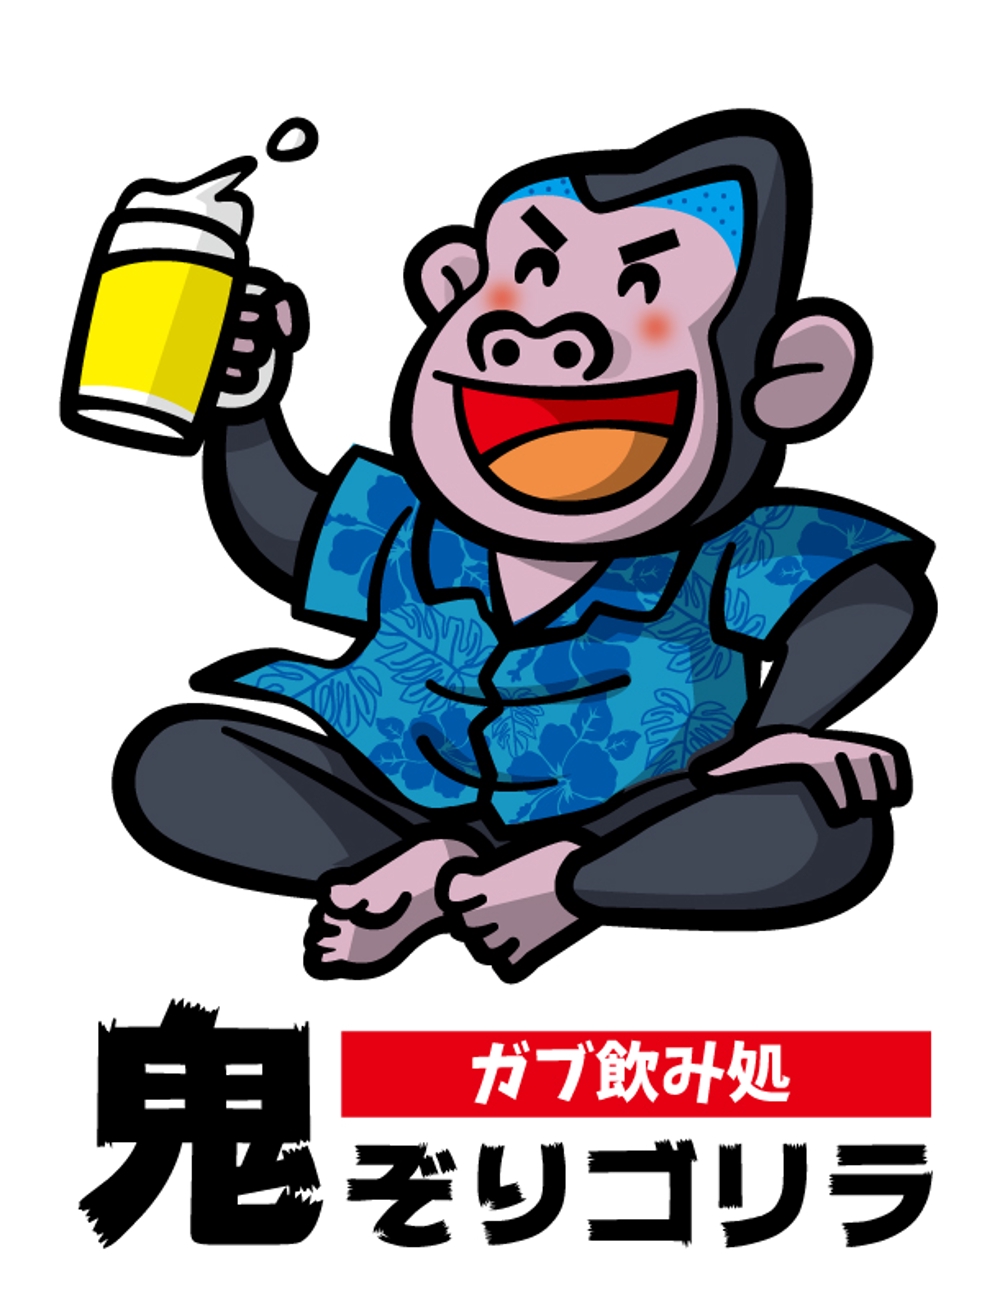 Shigeru211さんの事例 実績 提案 全国約140店舗展開する飲食企業の新ブランドのキャラクター ロゴ作成 お世話になります S クラウドソーシング ランサーズ